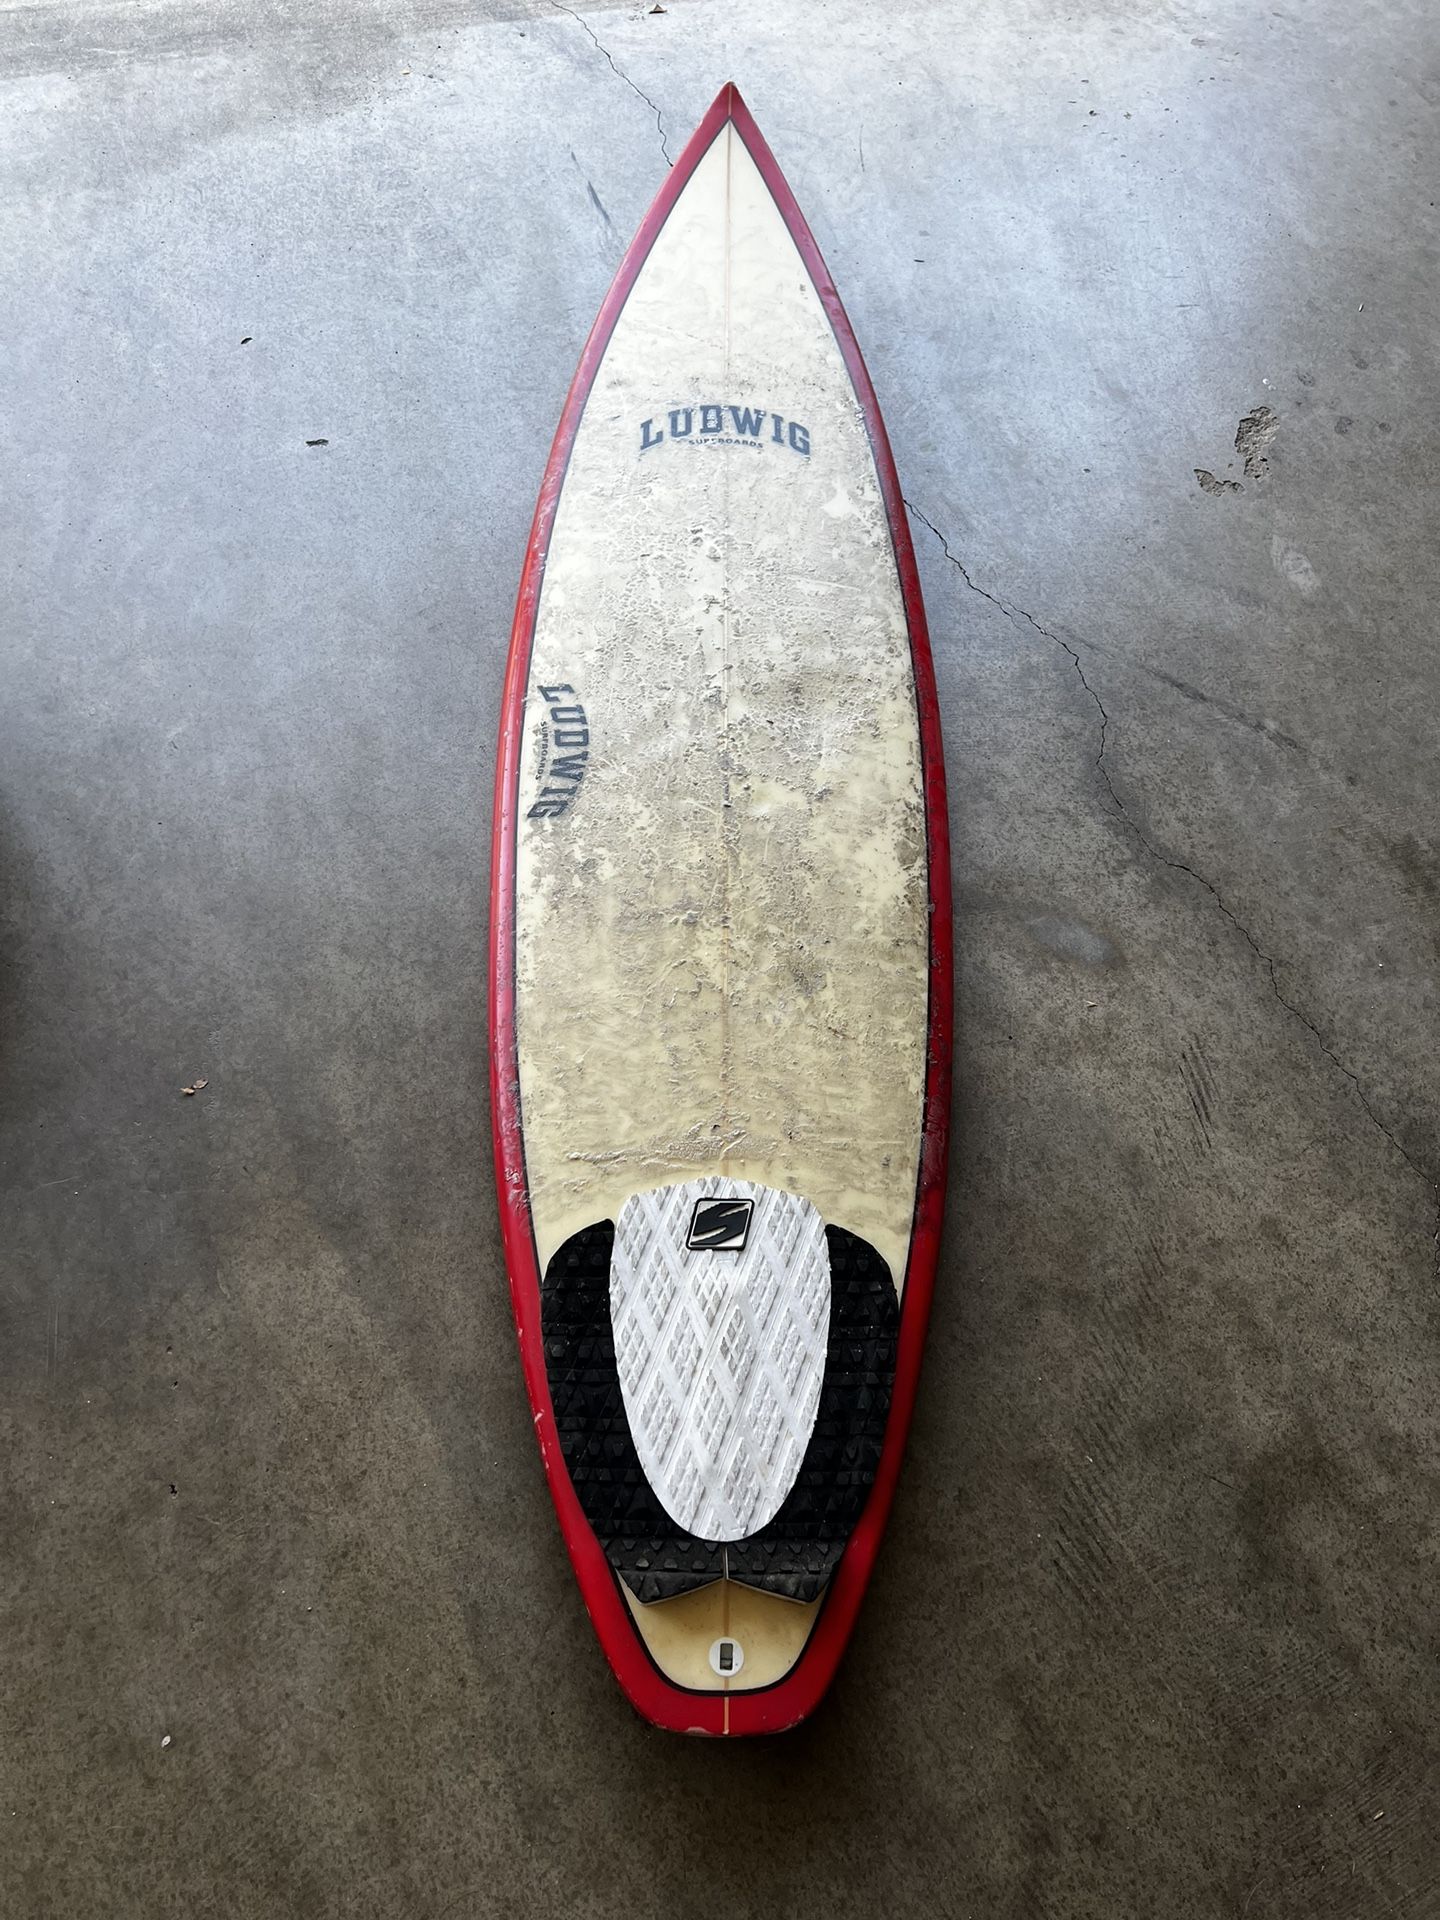 Free Ludwig Surfboards Needs Repair 